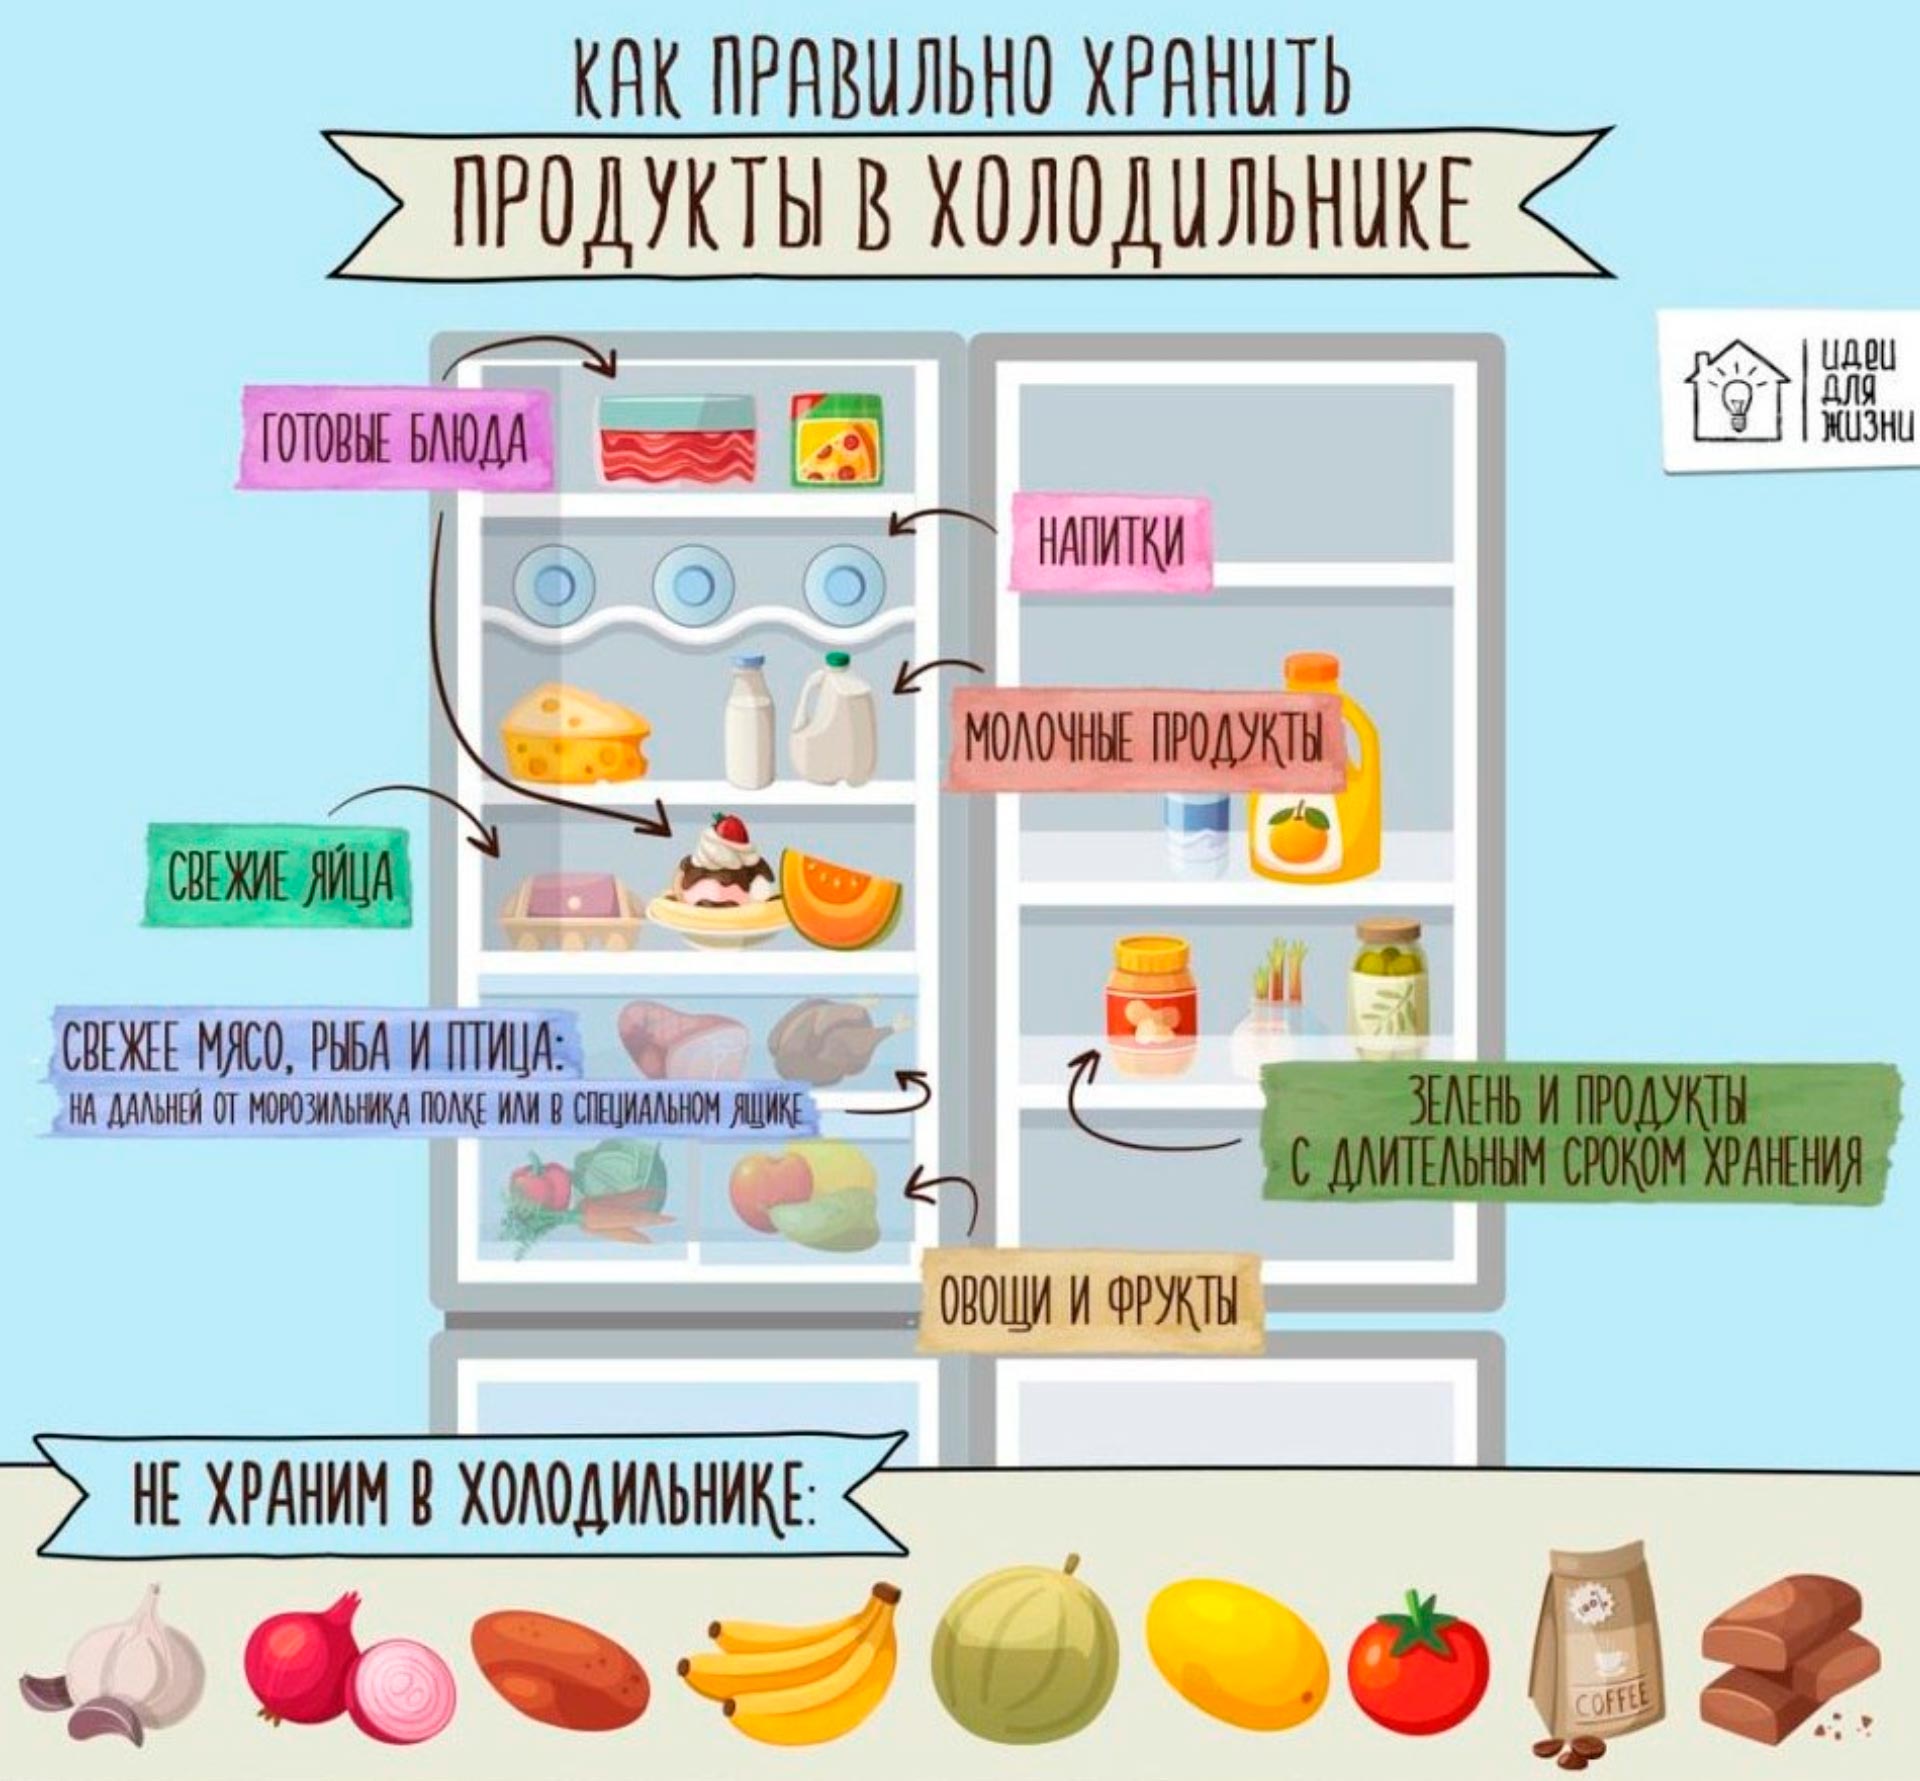 كيفية تخزين الطعام في الثلاجة